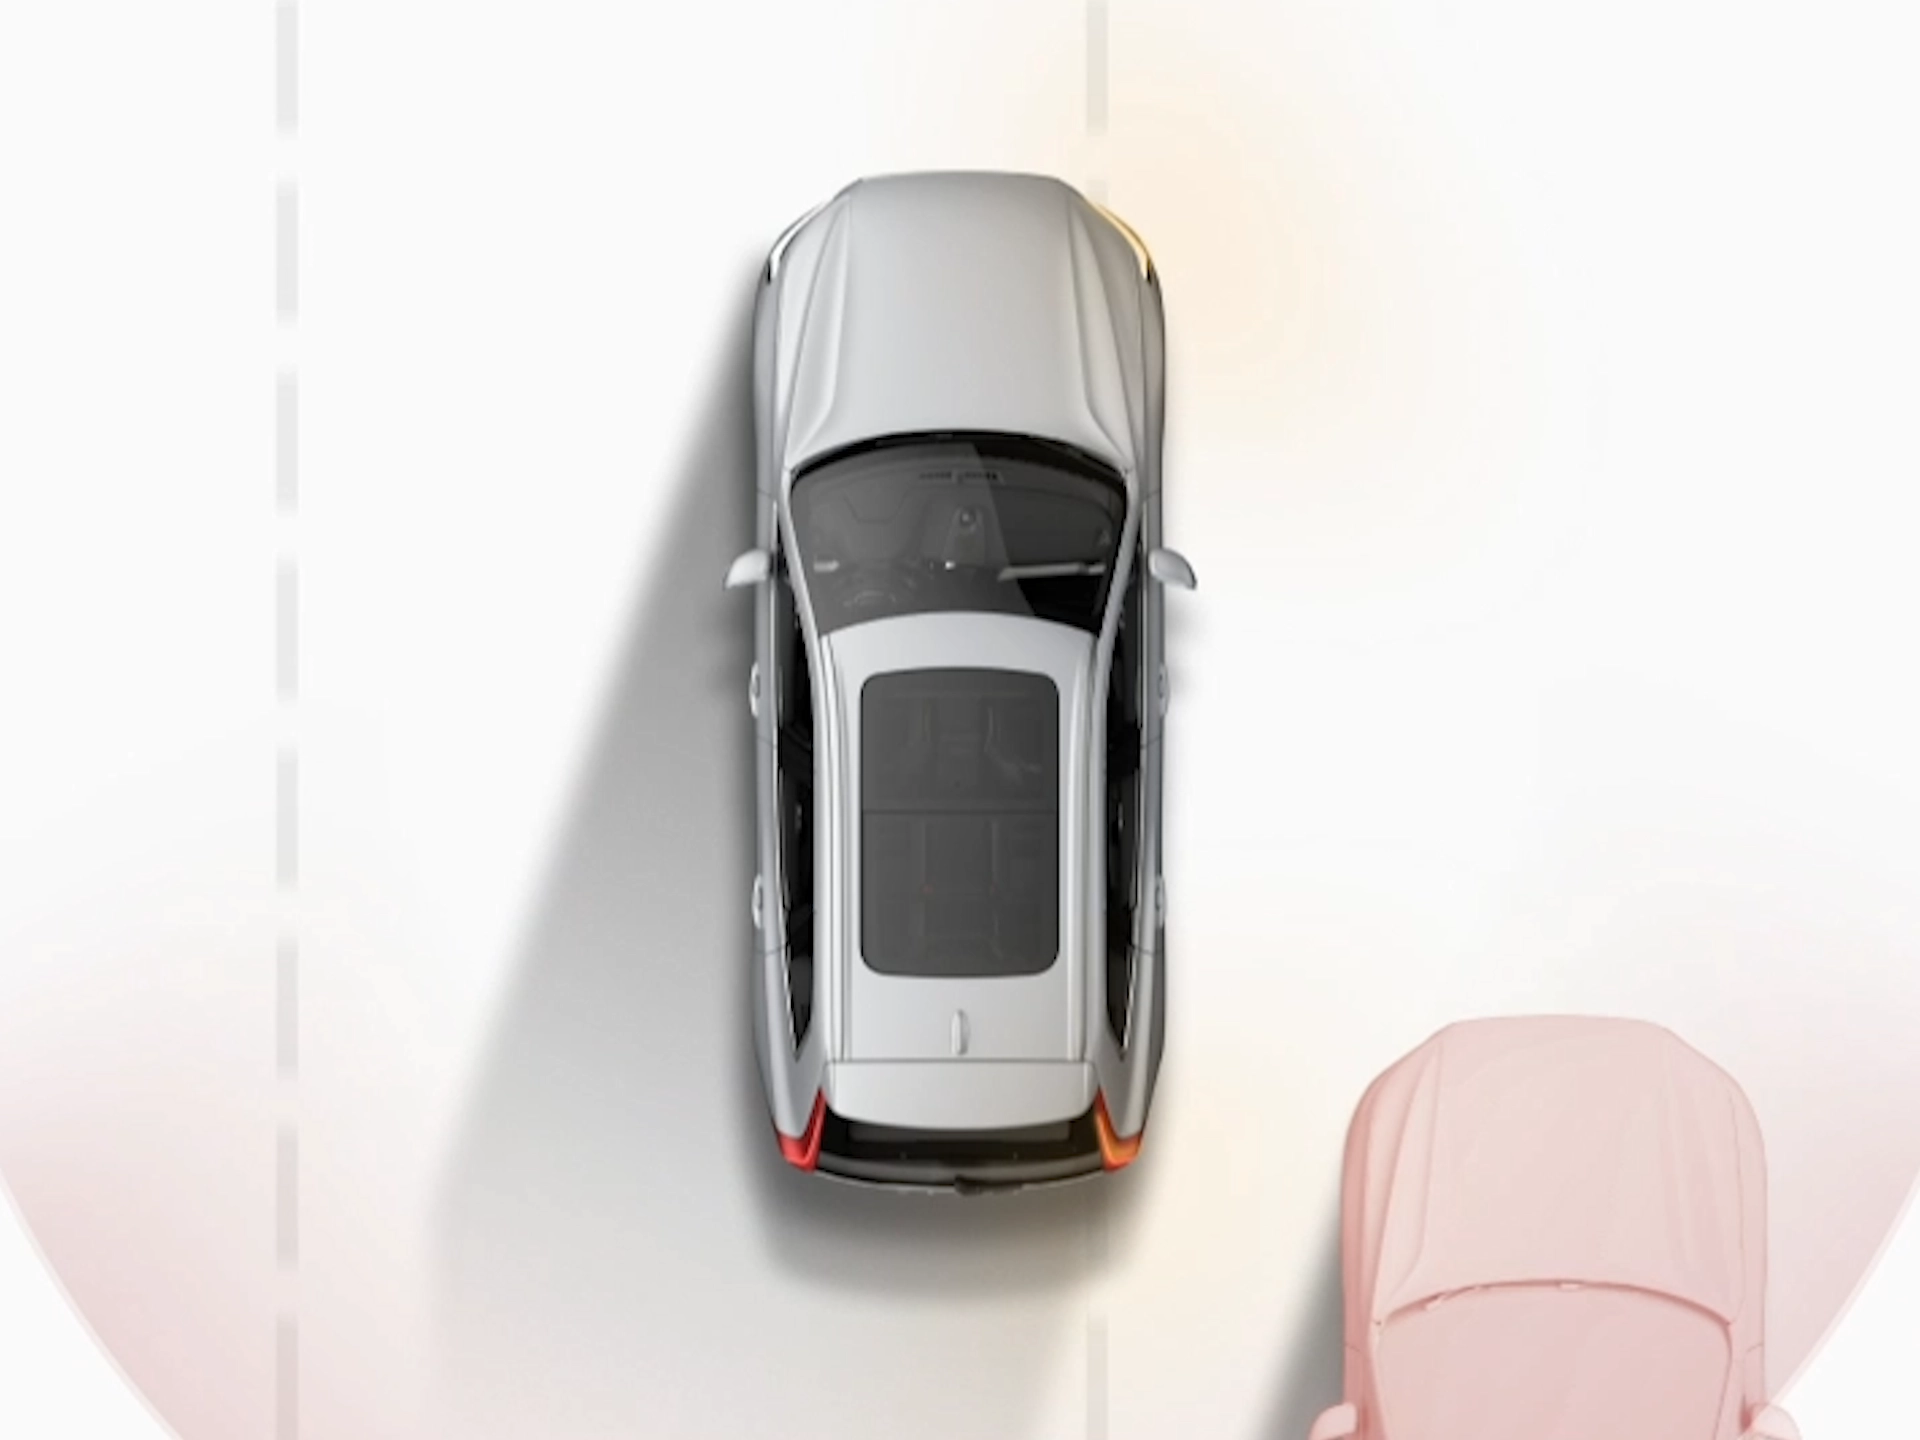 Imagen ilustrada de un automóvil Volvo desde arriba circulando junto a otros vehículos.